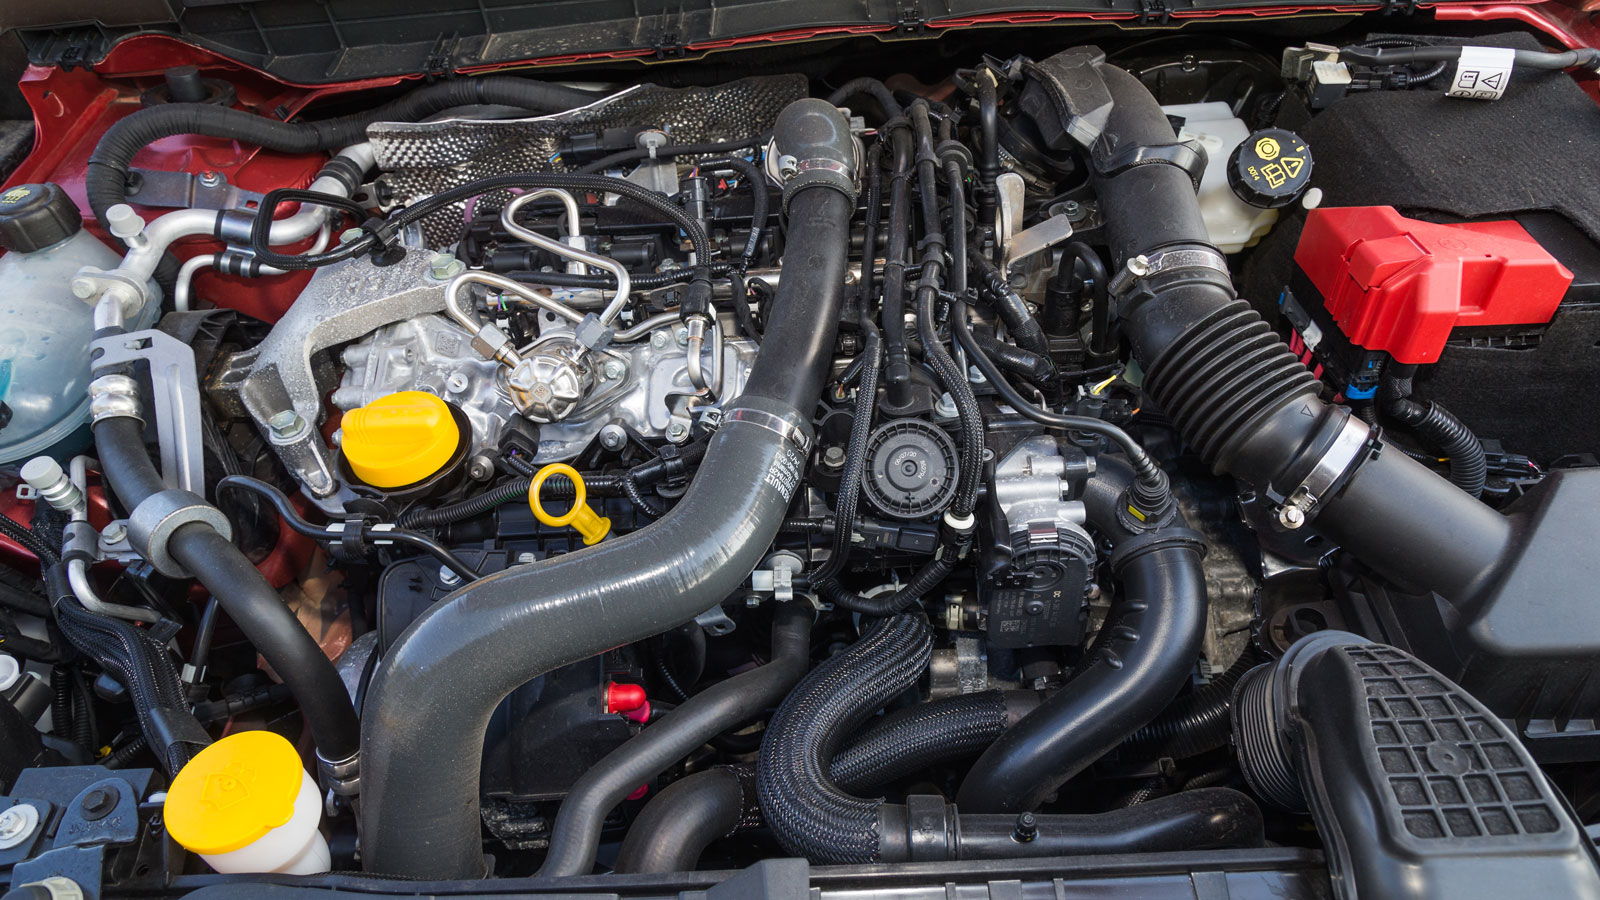 Ο κινητήρας 1,4 λίτρου του Renault Arkana χρησιμοποιείται και στο νέο Nissan Qashqai, έχει ήπια υβριδικό σύστημα και αποδίδει 140 άλογα. Καίει 8,3 λίτρα/100 χλμ